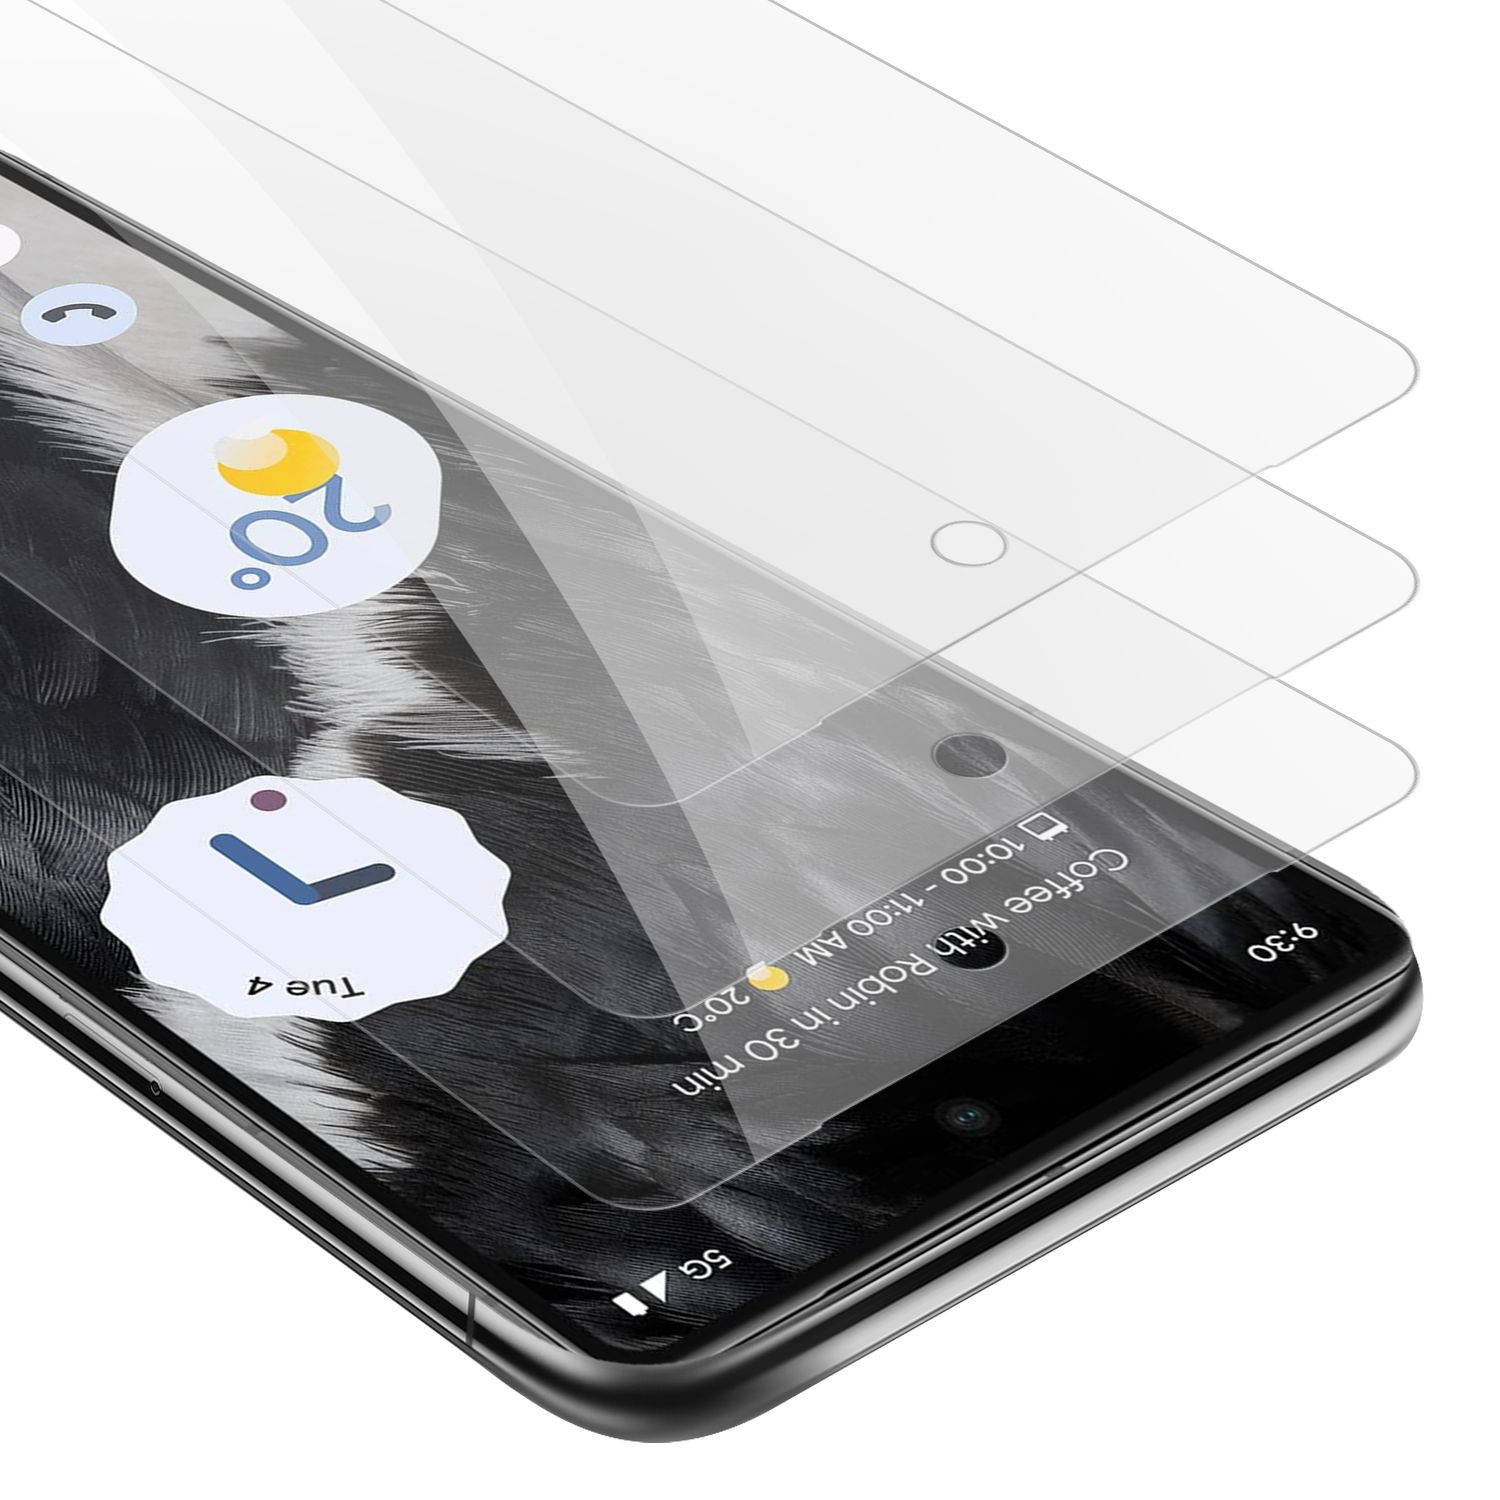 Cadorabo 3x Screenprotector voor Google PIXEL 7 - Beschermende Pantser Film in KRISTALHELDER - Getemperd (Tempered) Display beschermend glas in 9H hardheid met 3D Touch